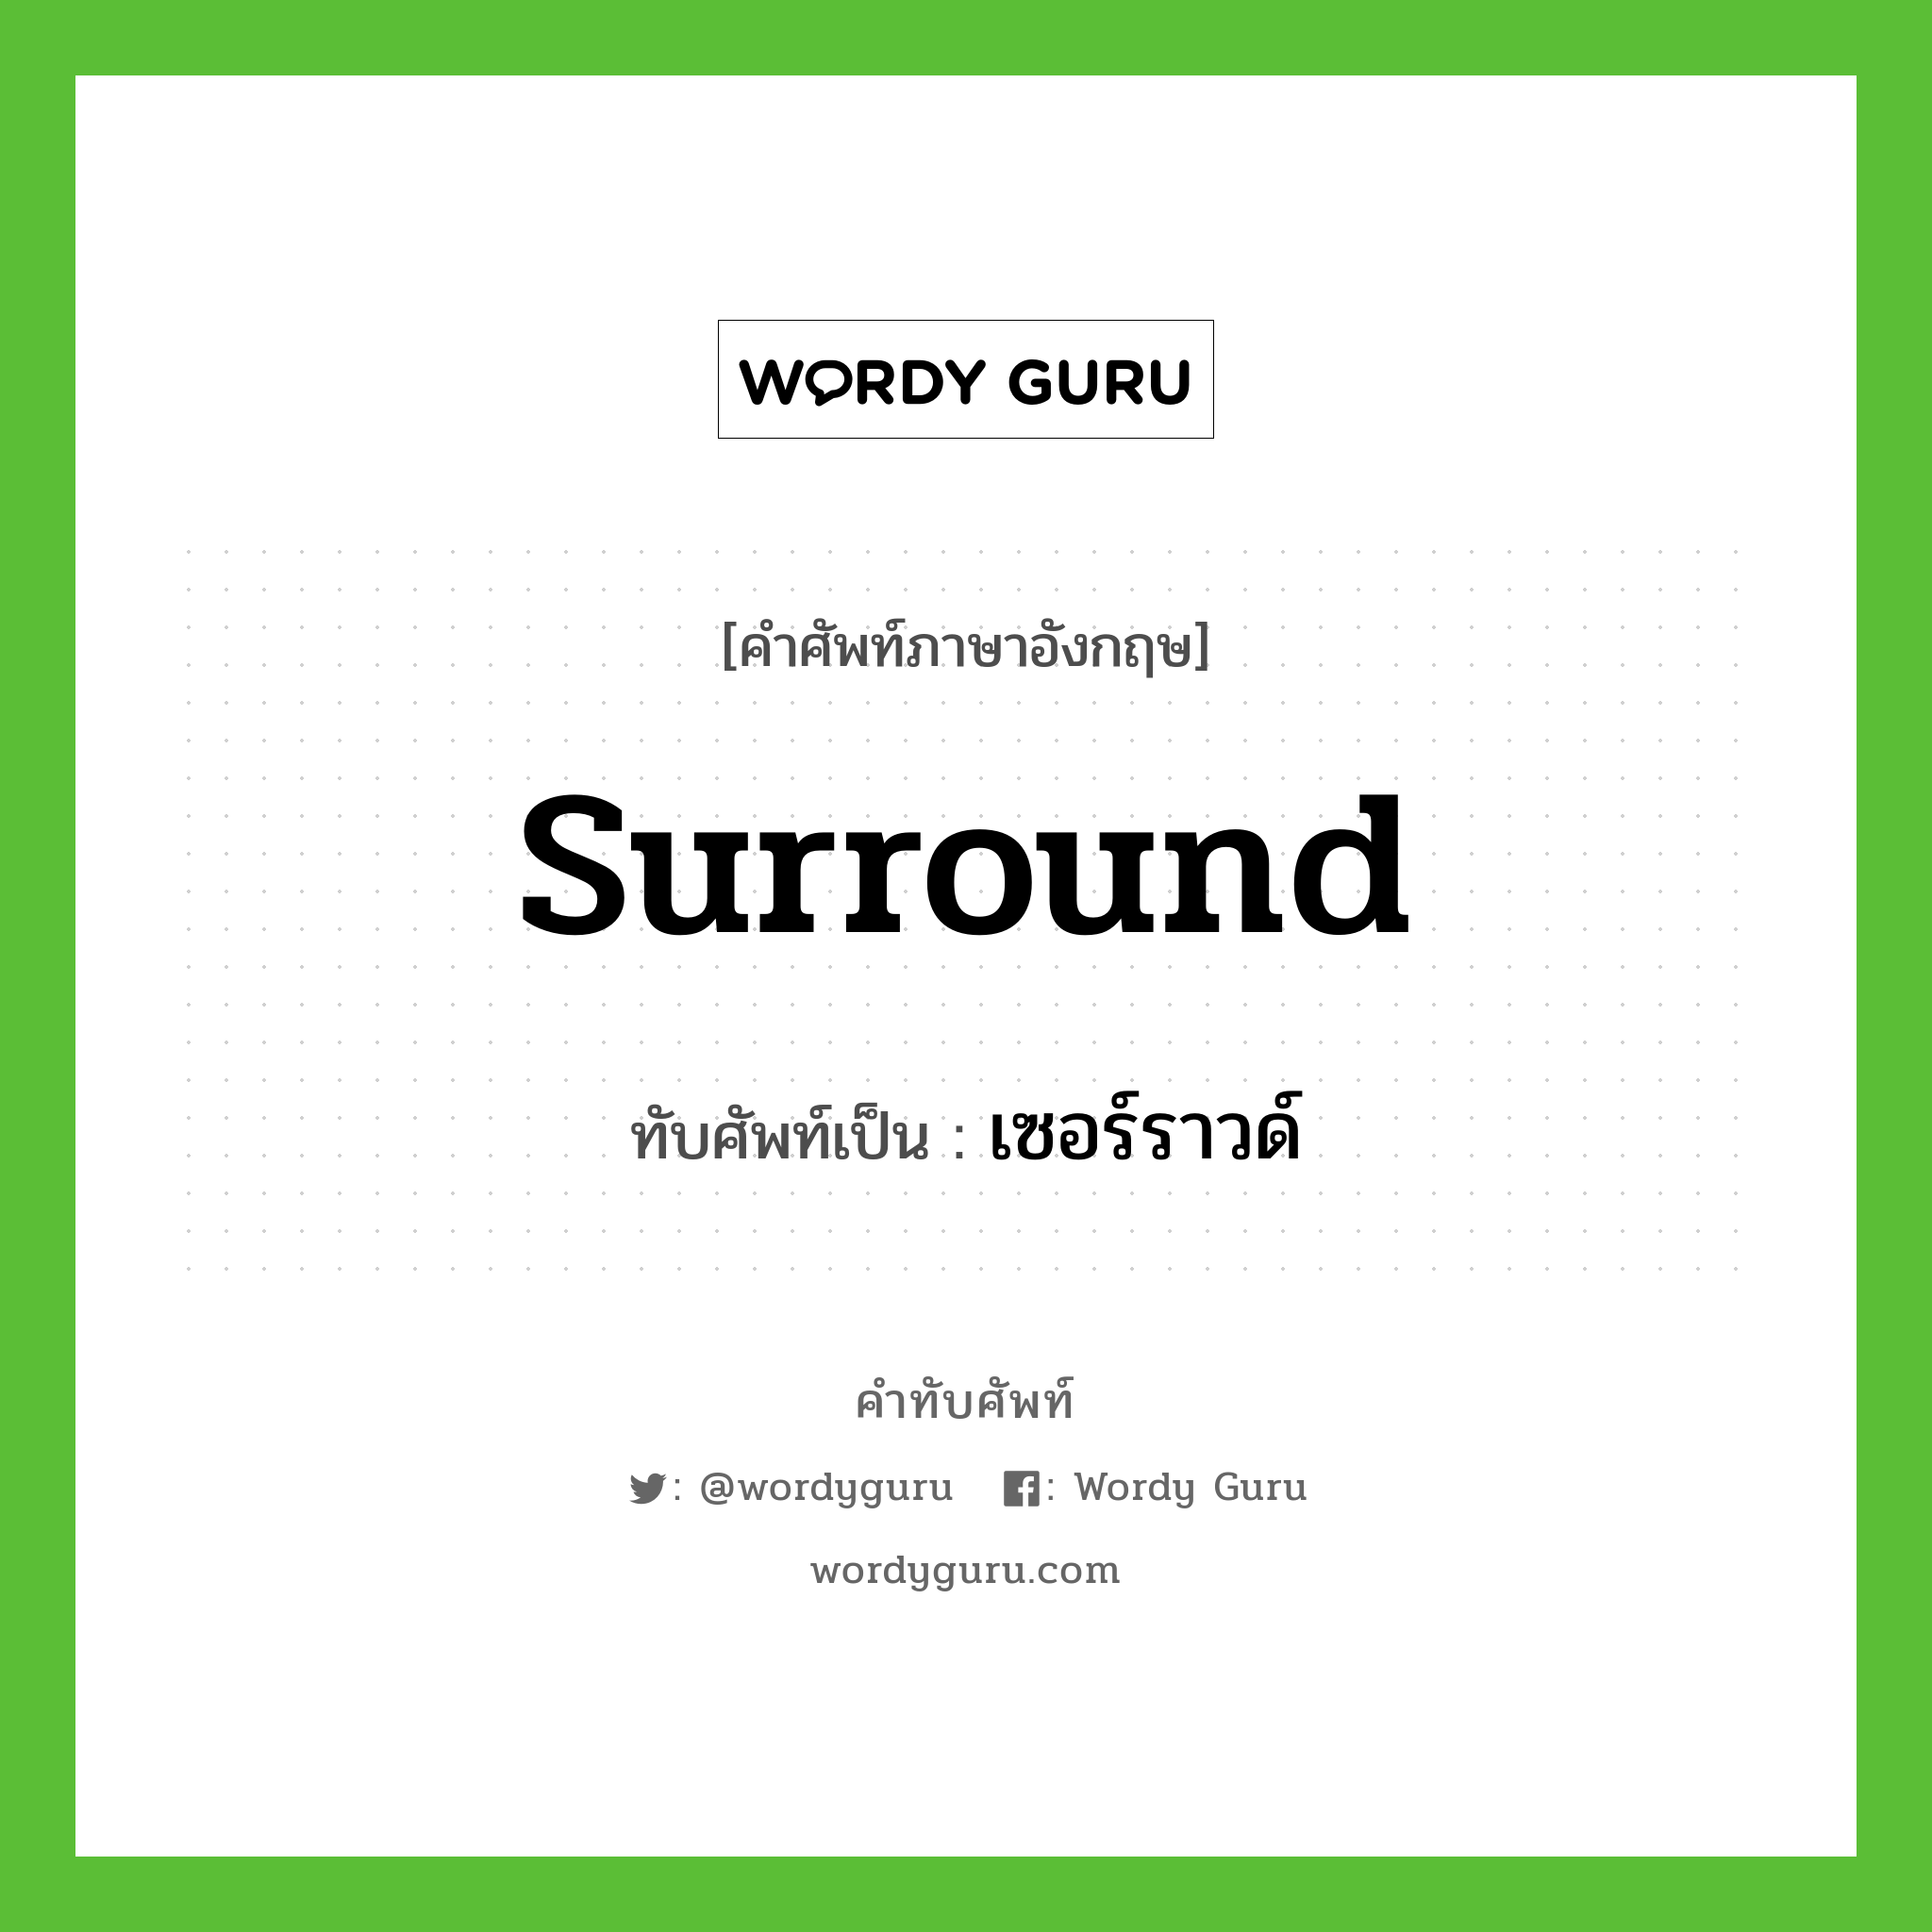 surround เขียนเป็นคำไทยว่าอะไร?, คำศัพท์ภาษาอังกฤษ surround ทับศัพท์เป็น เซอร์ราวด์